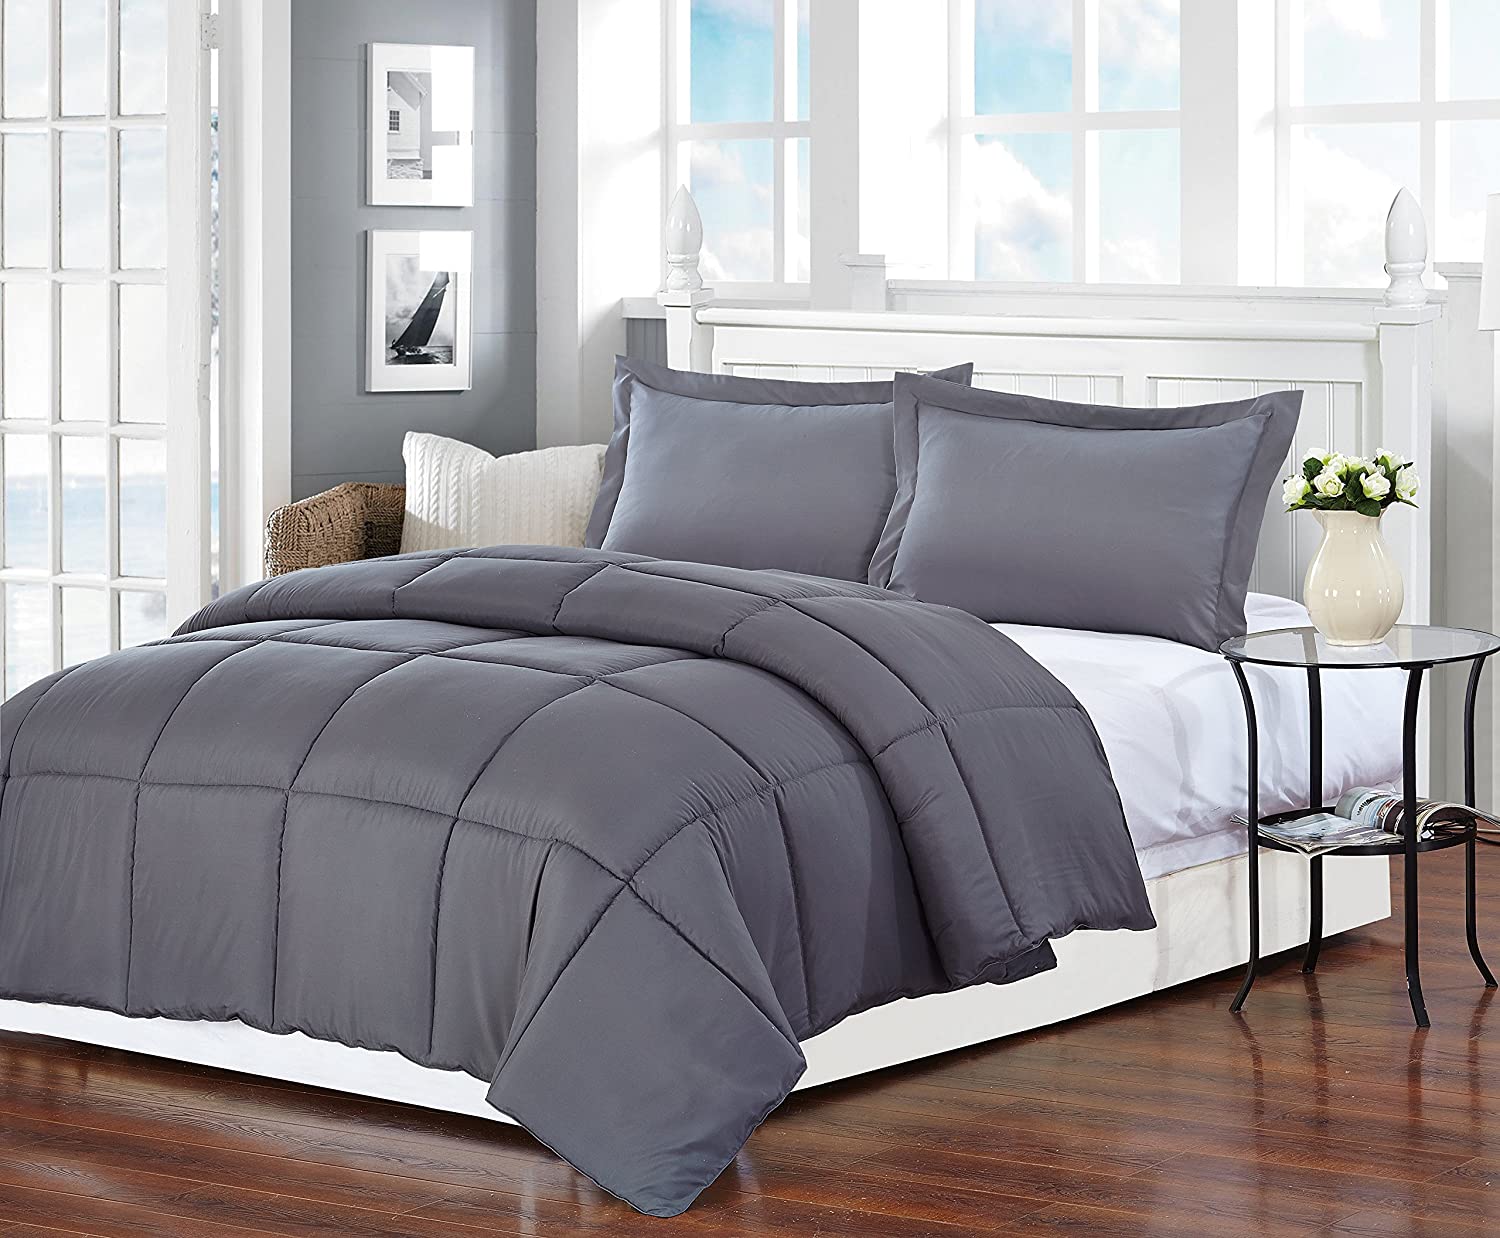 Polyester Medium Warmth Down Alternative Comforter Duvet Insert Queen (88" x 88", Grey)